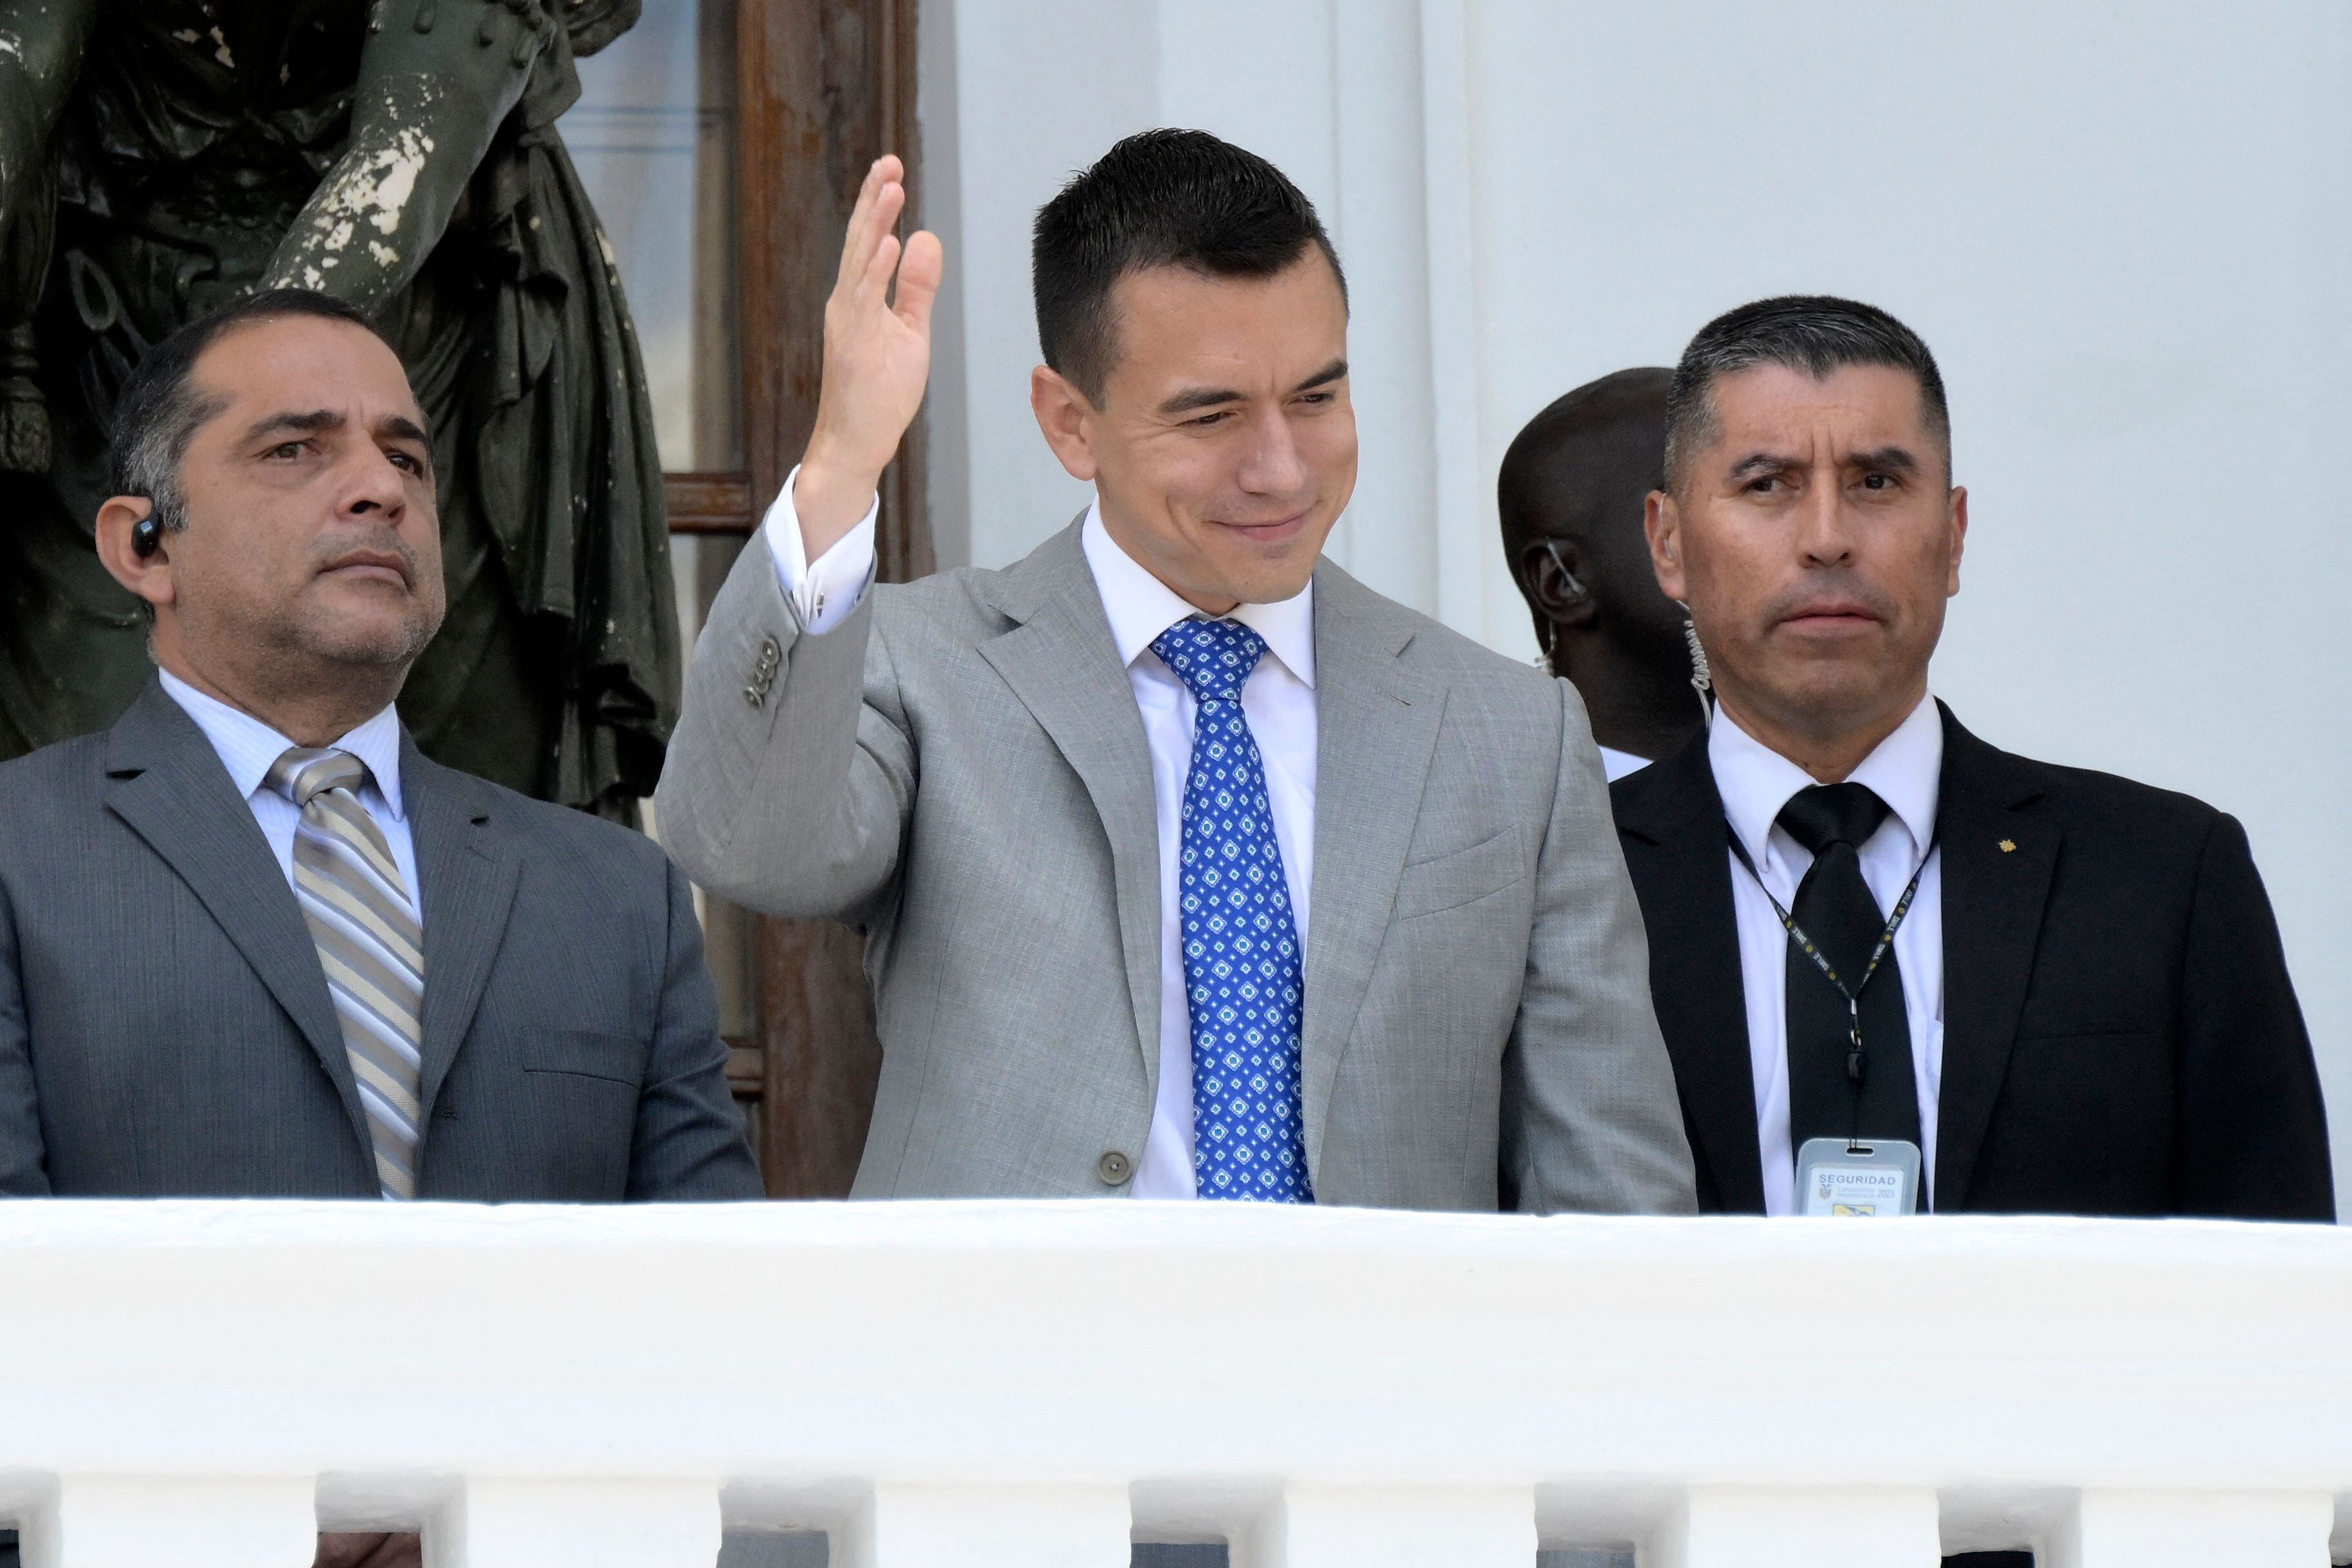 El presidente electo, Daniel Novoa, fue uno de los primeros políticos ecuatorianos en utilizar chaleco antibalas